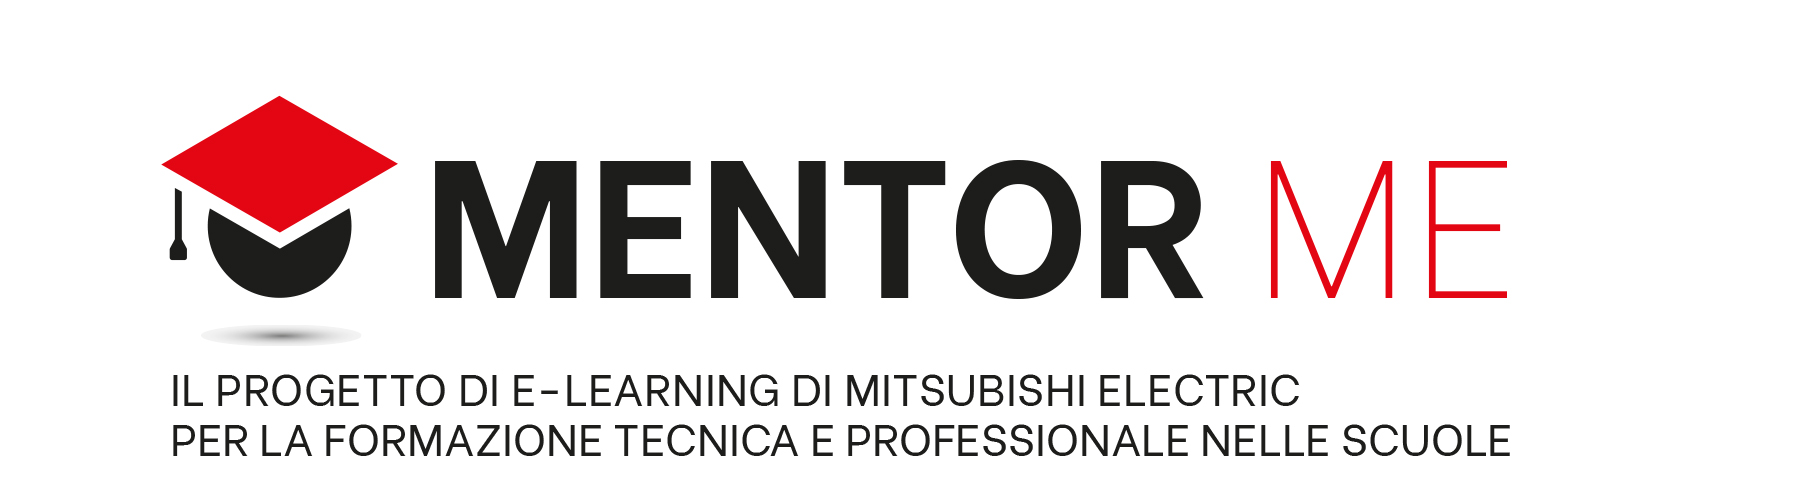 Mentor ME logo